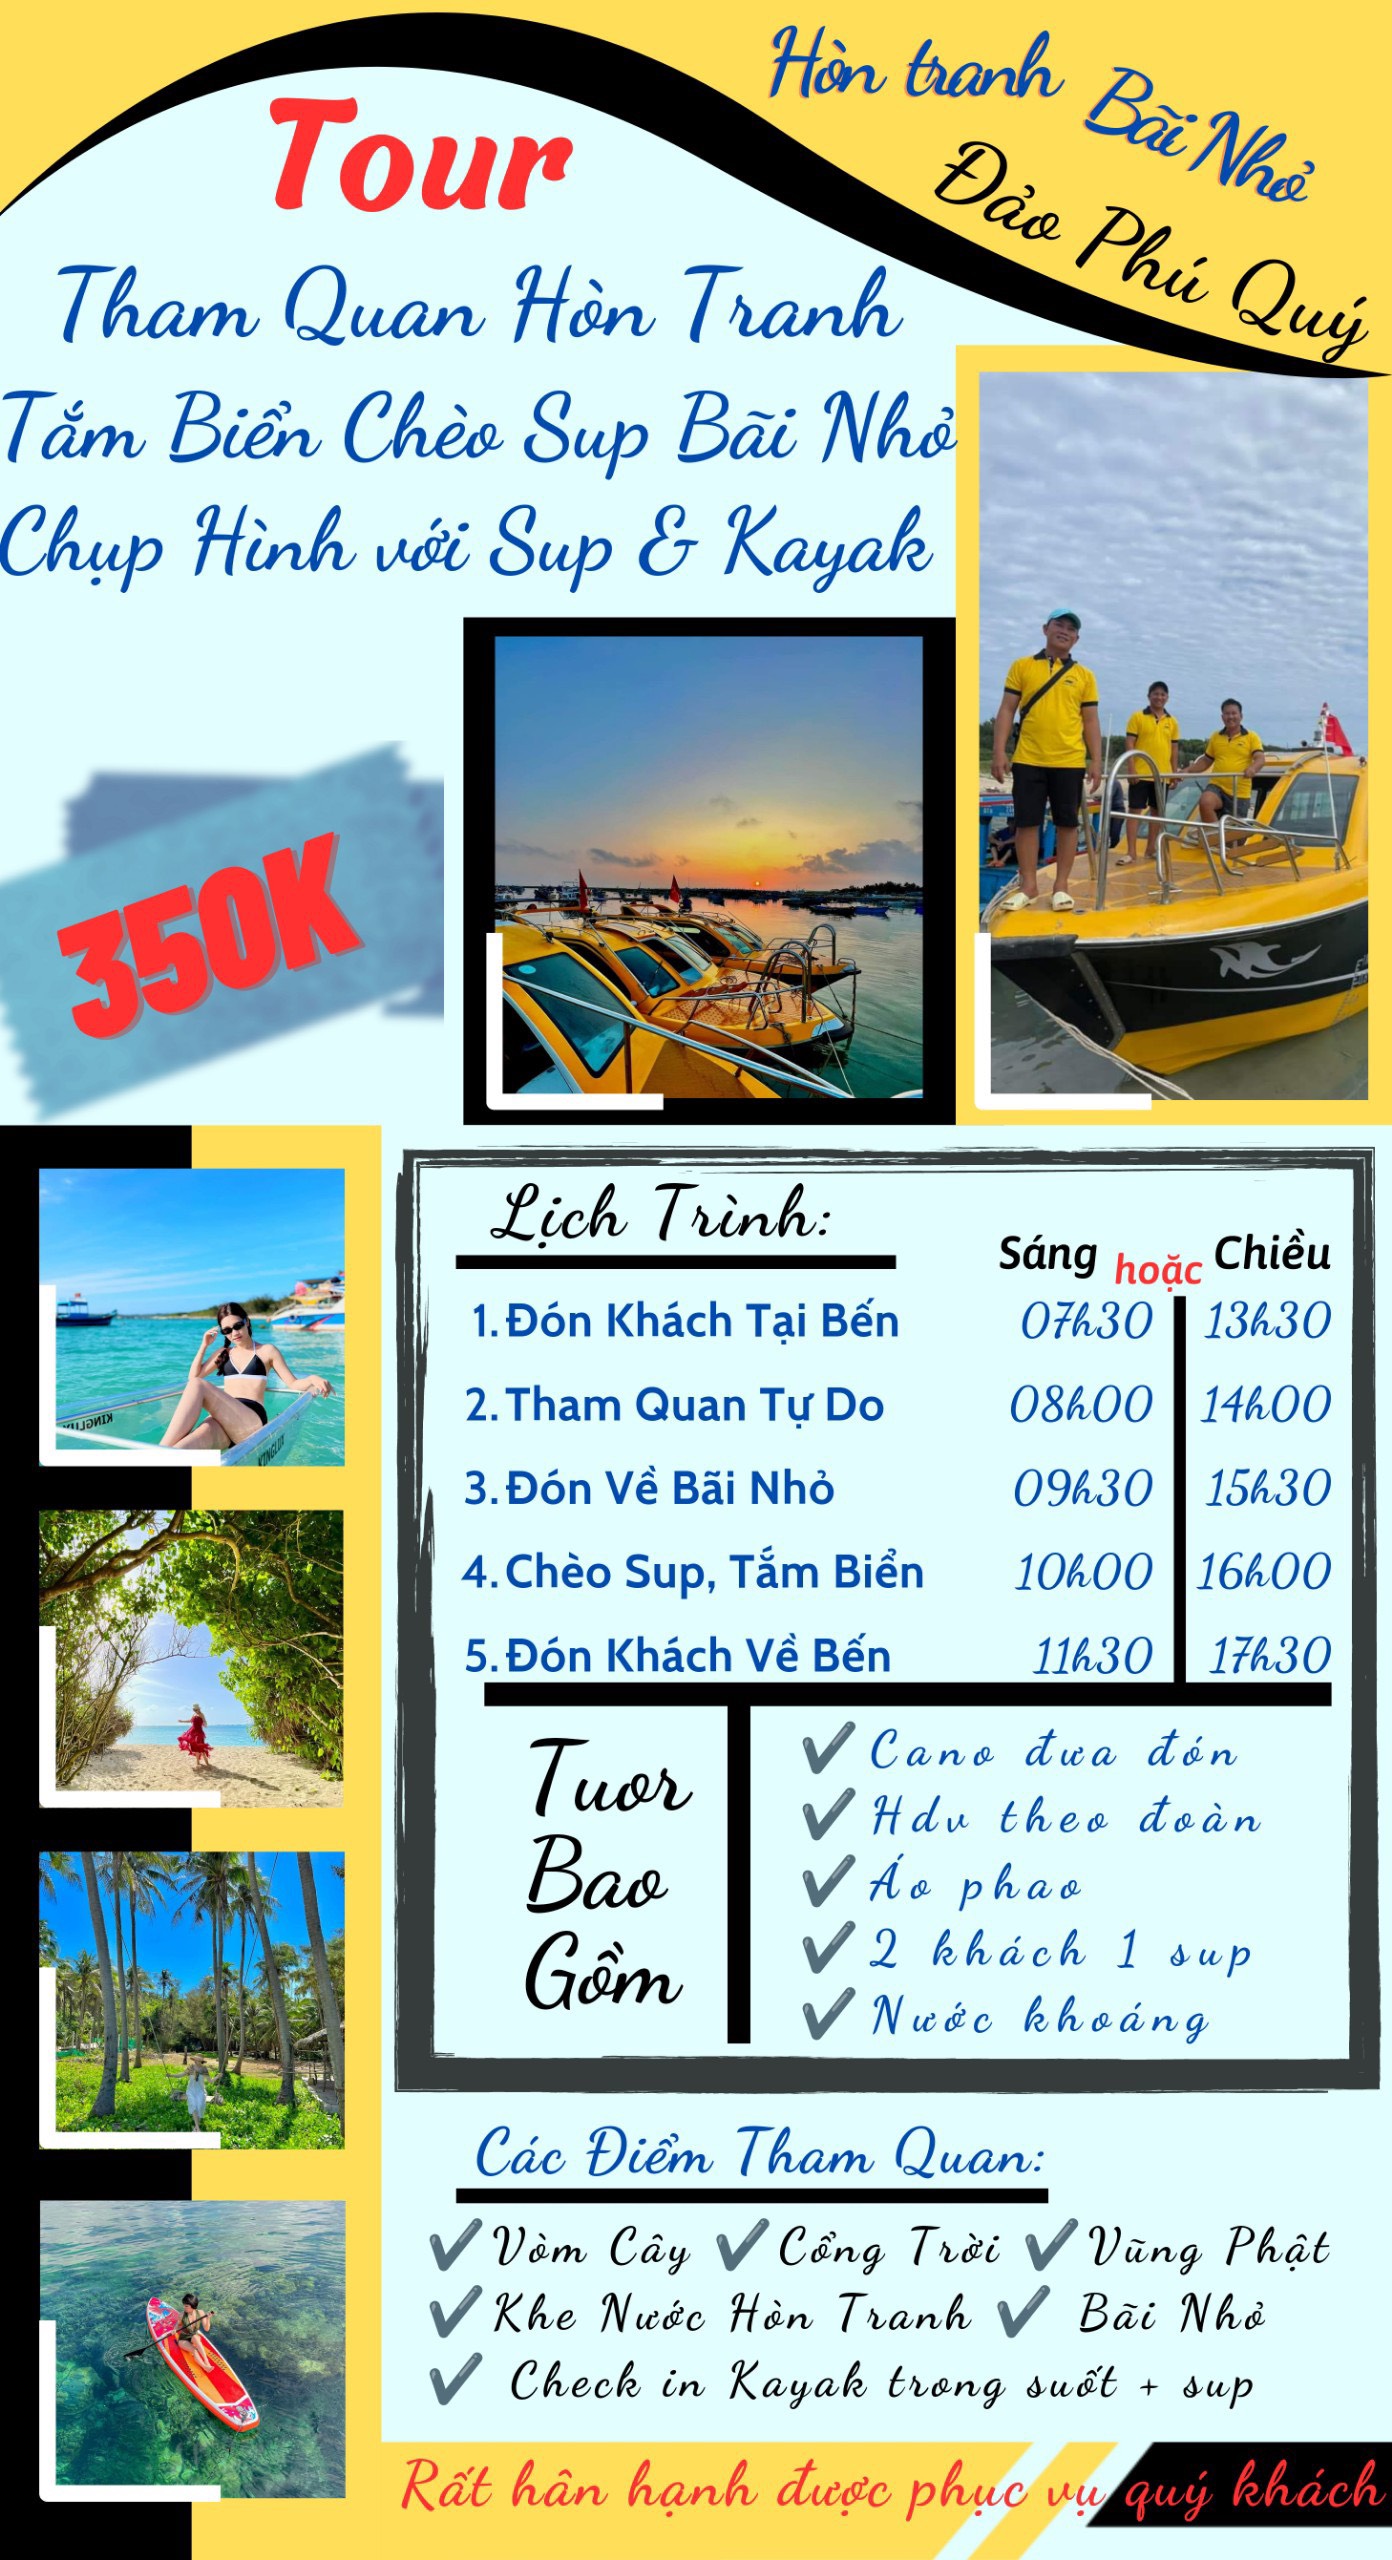 Tour tham quan Hòn Tranh, tắm biển, chèo SUP Bãi Nhỏ và chụp hình với Sup & Kayak